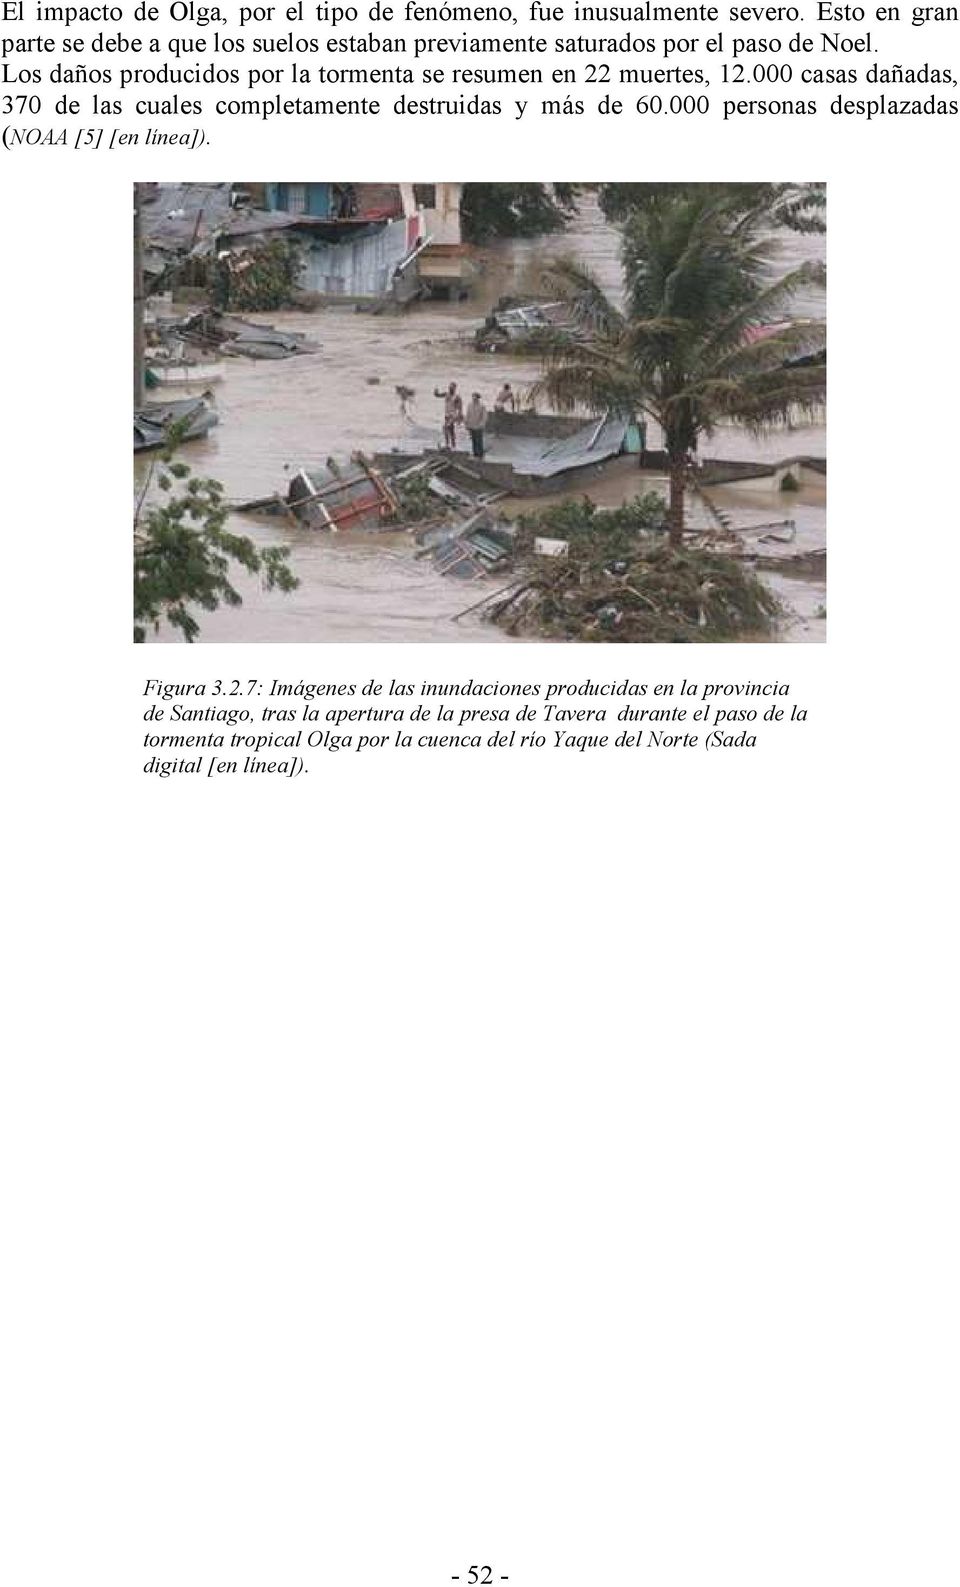 Los daños producidos por la tormenta se resumen en 22 muertes, 12.000 casas dañadas, 370 de las cuales completamente destruidas y más de 60.